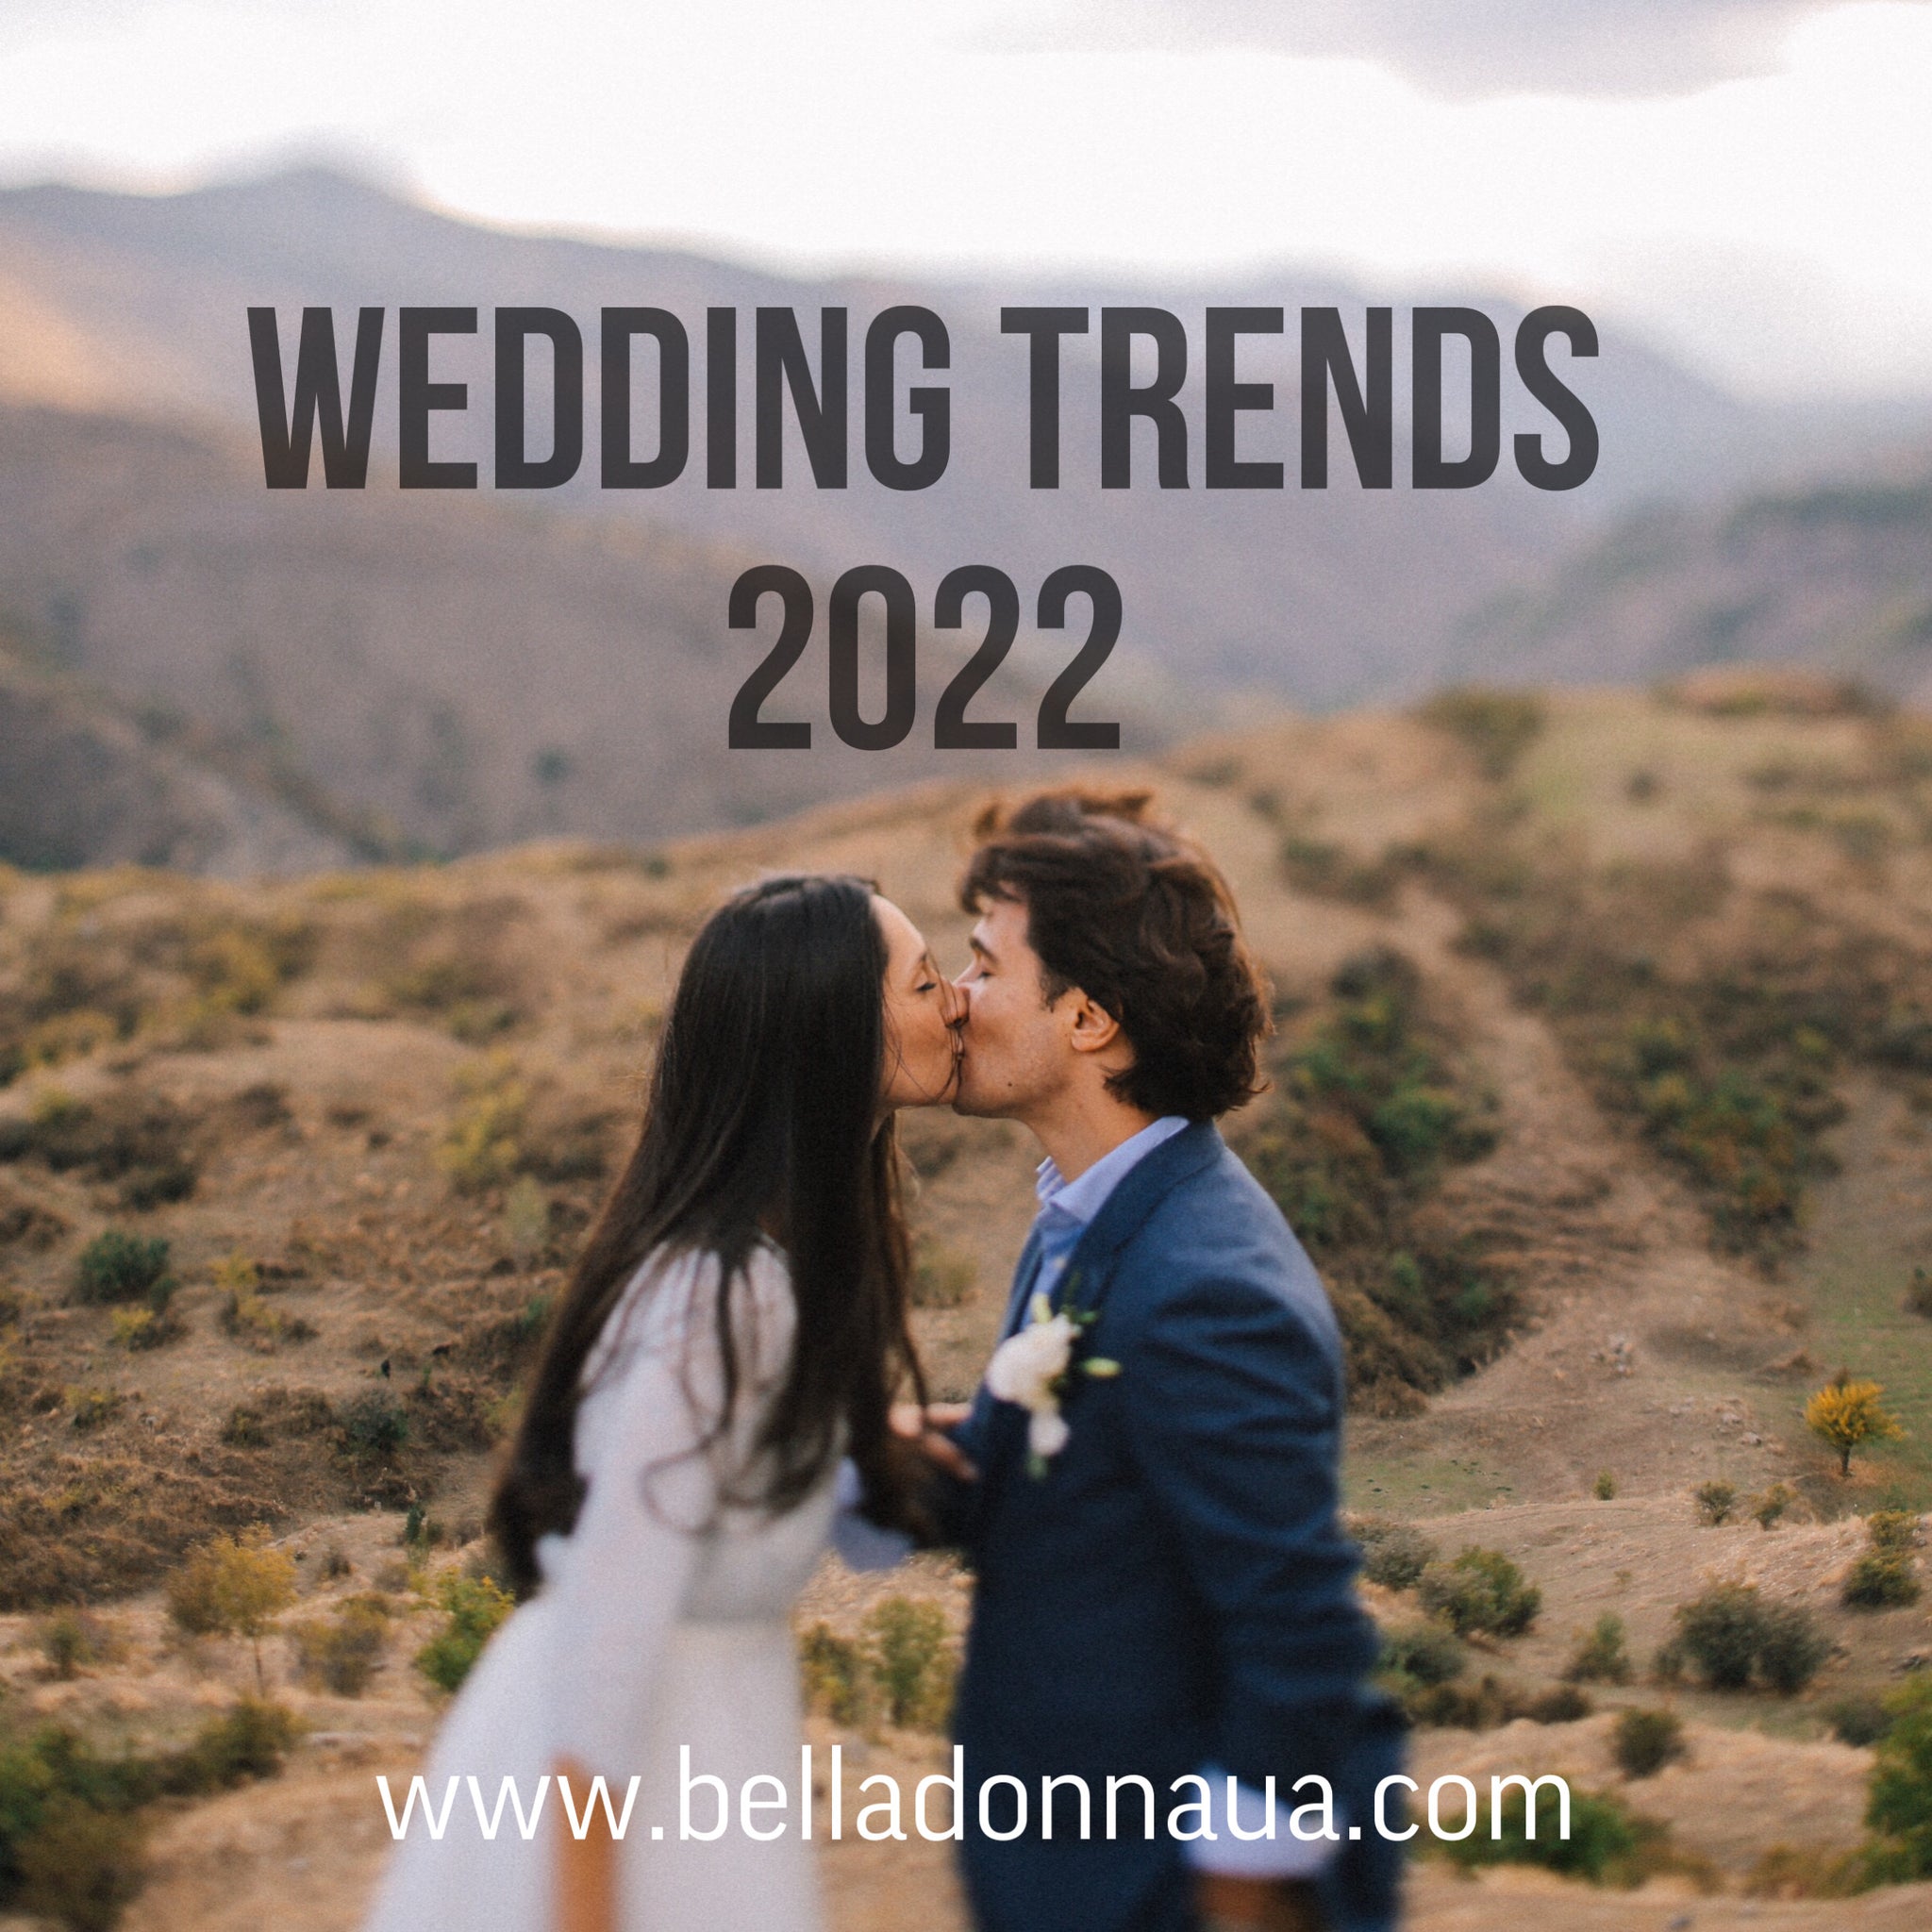 Wedding trends 2022